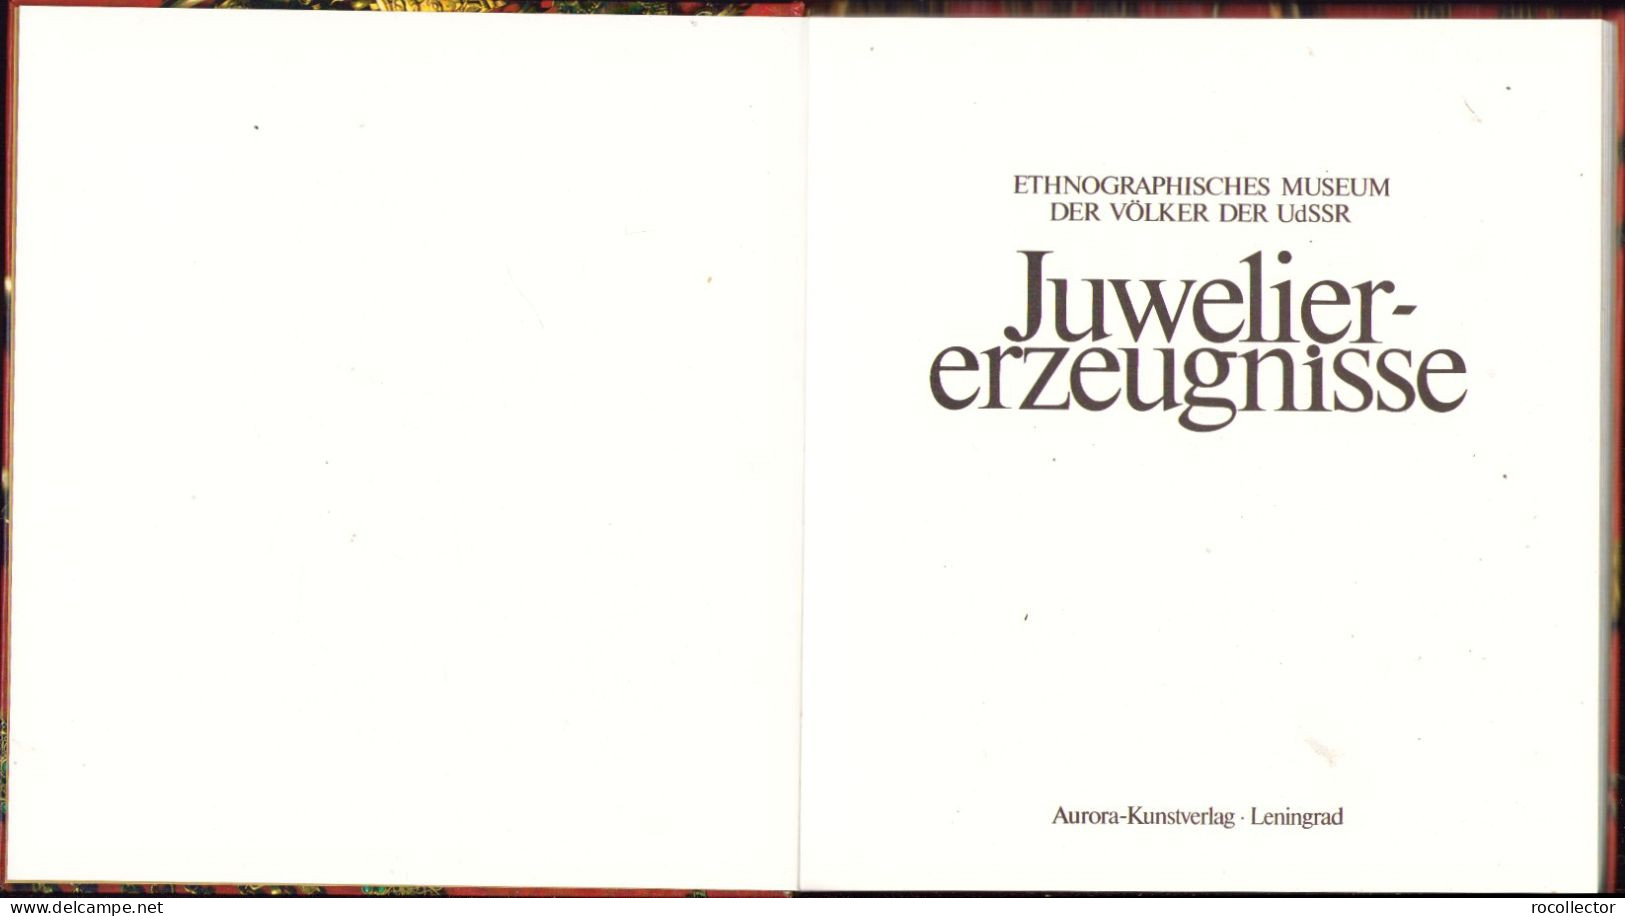 Juwelier-erzeugnisse Zusammengestelt Von Galina Komleva 1988 Ethnographisches Museum Der Völker Der UdSSR Leningrad - Livres Anciens